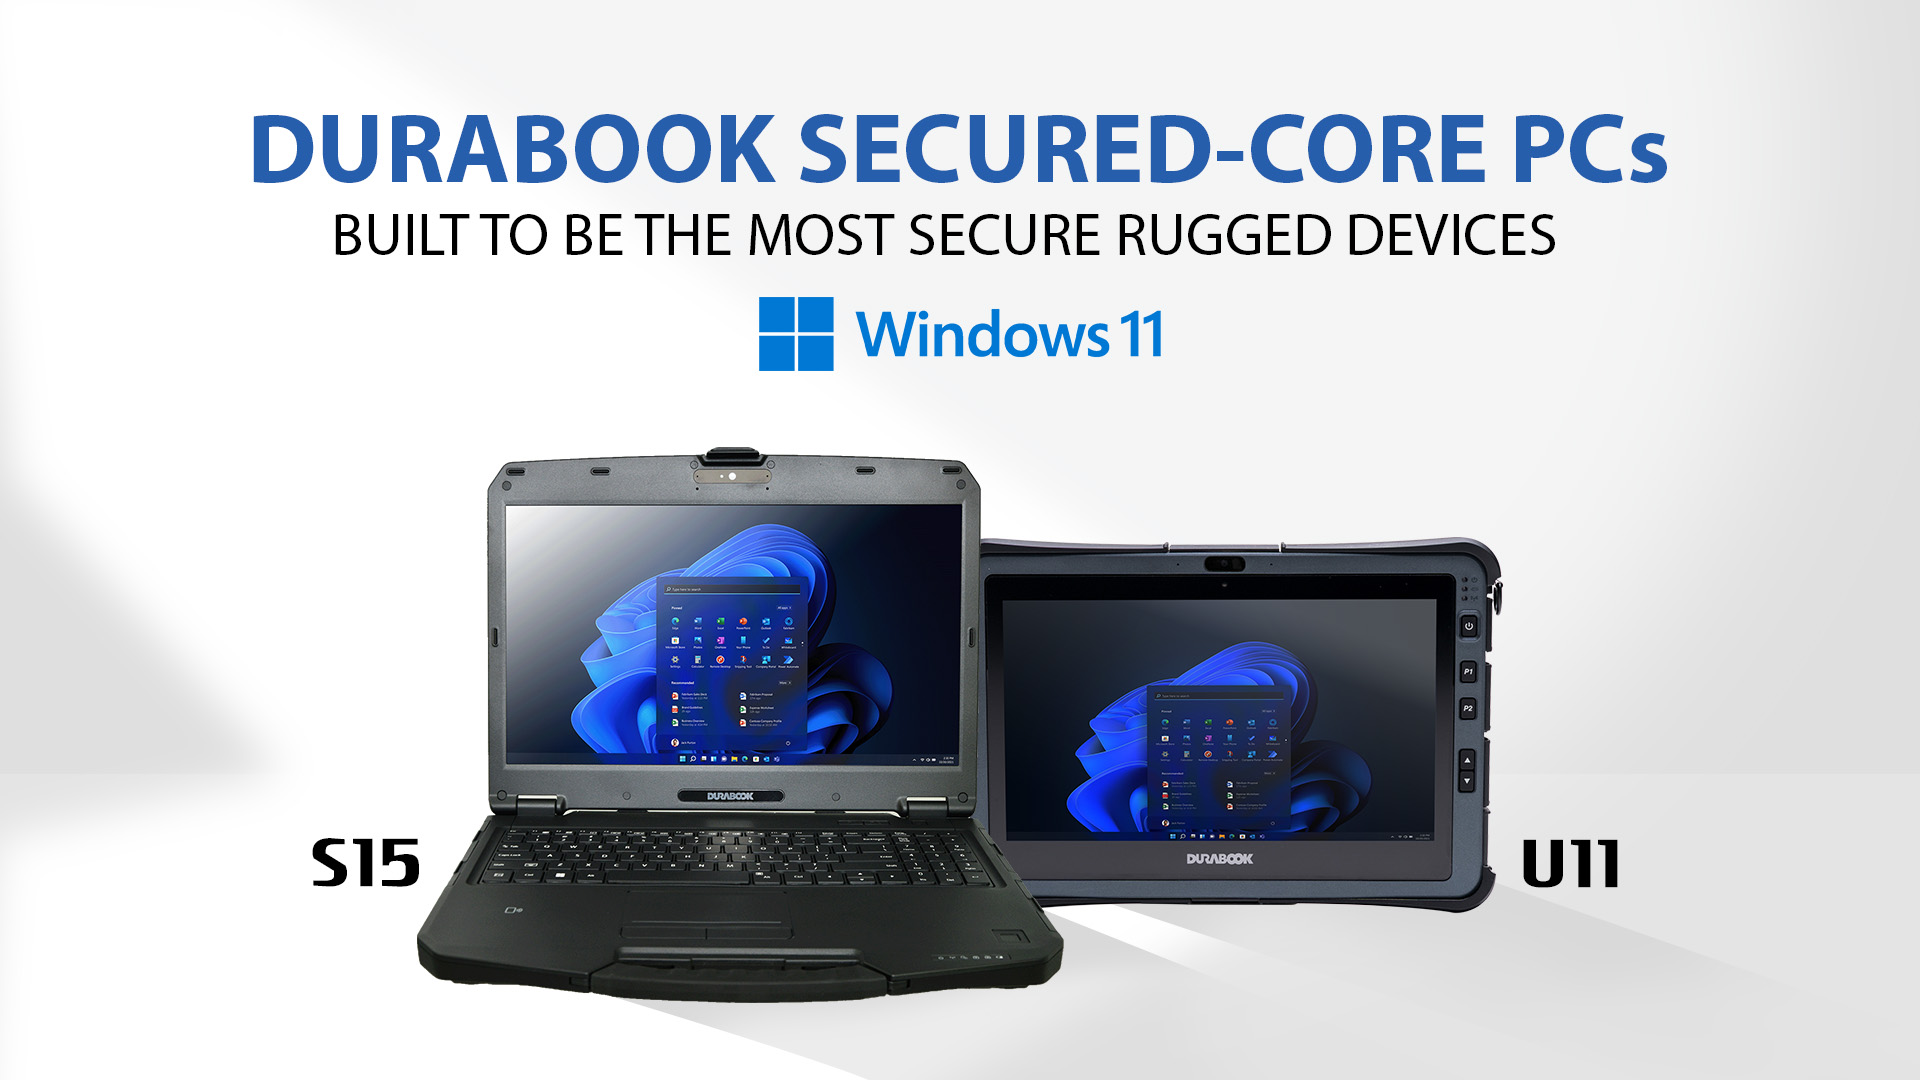 Durabook宣布其移动强固式计算产品中加入微軟 Secured-core PC安全内核防護計畫